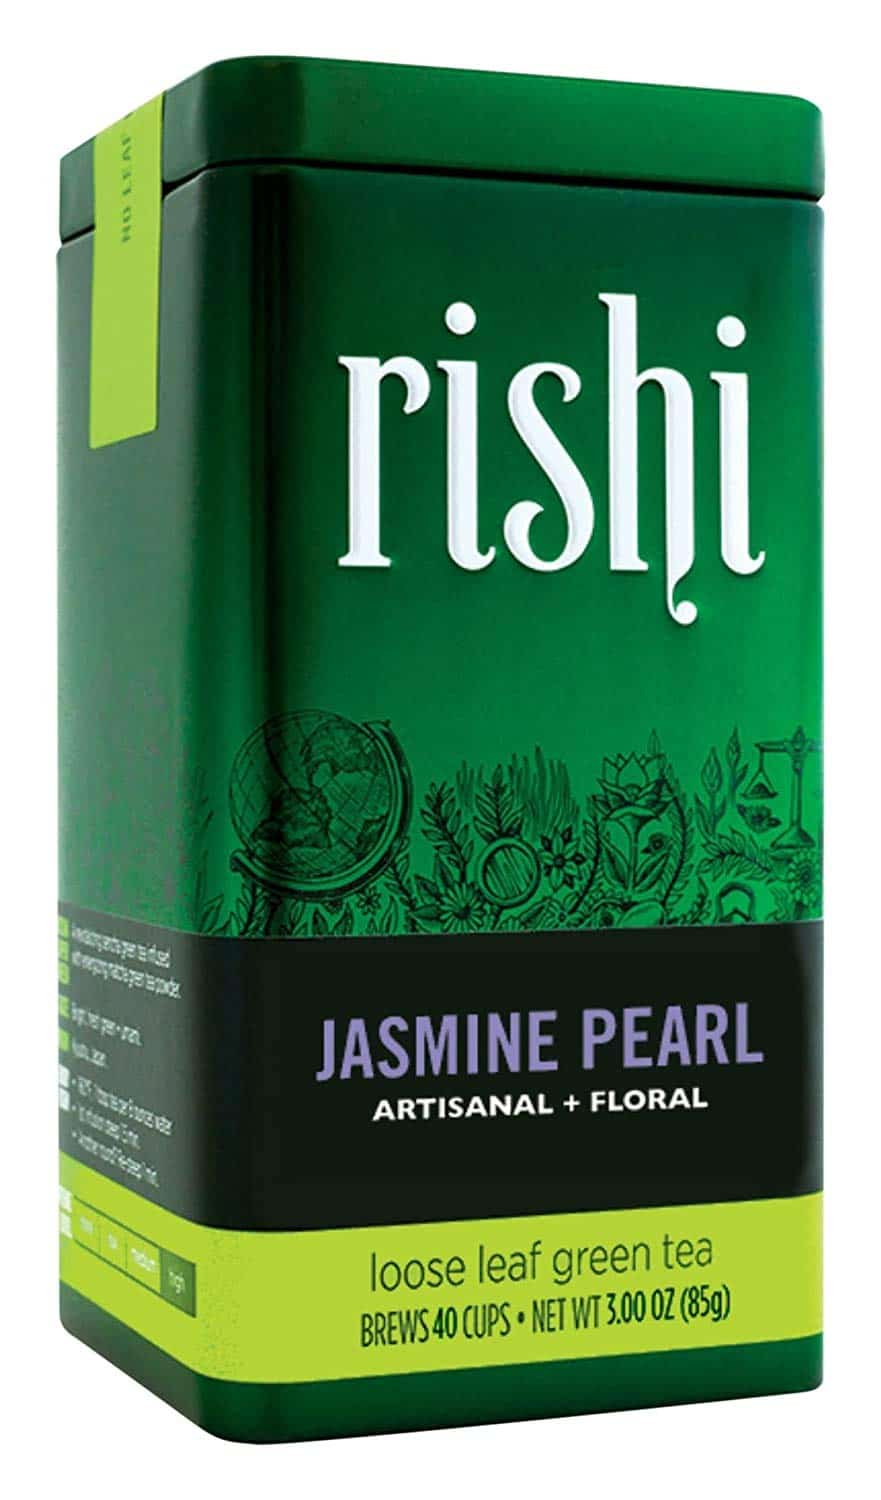 best jasmine tea